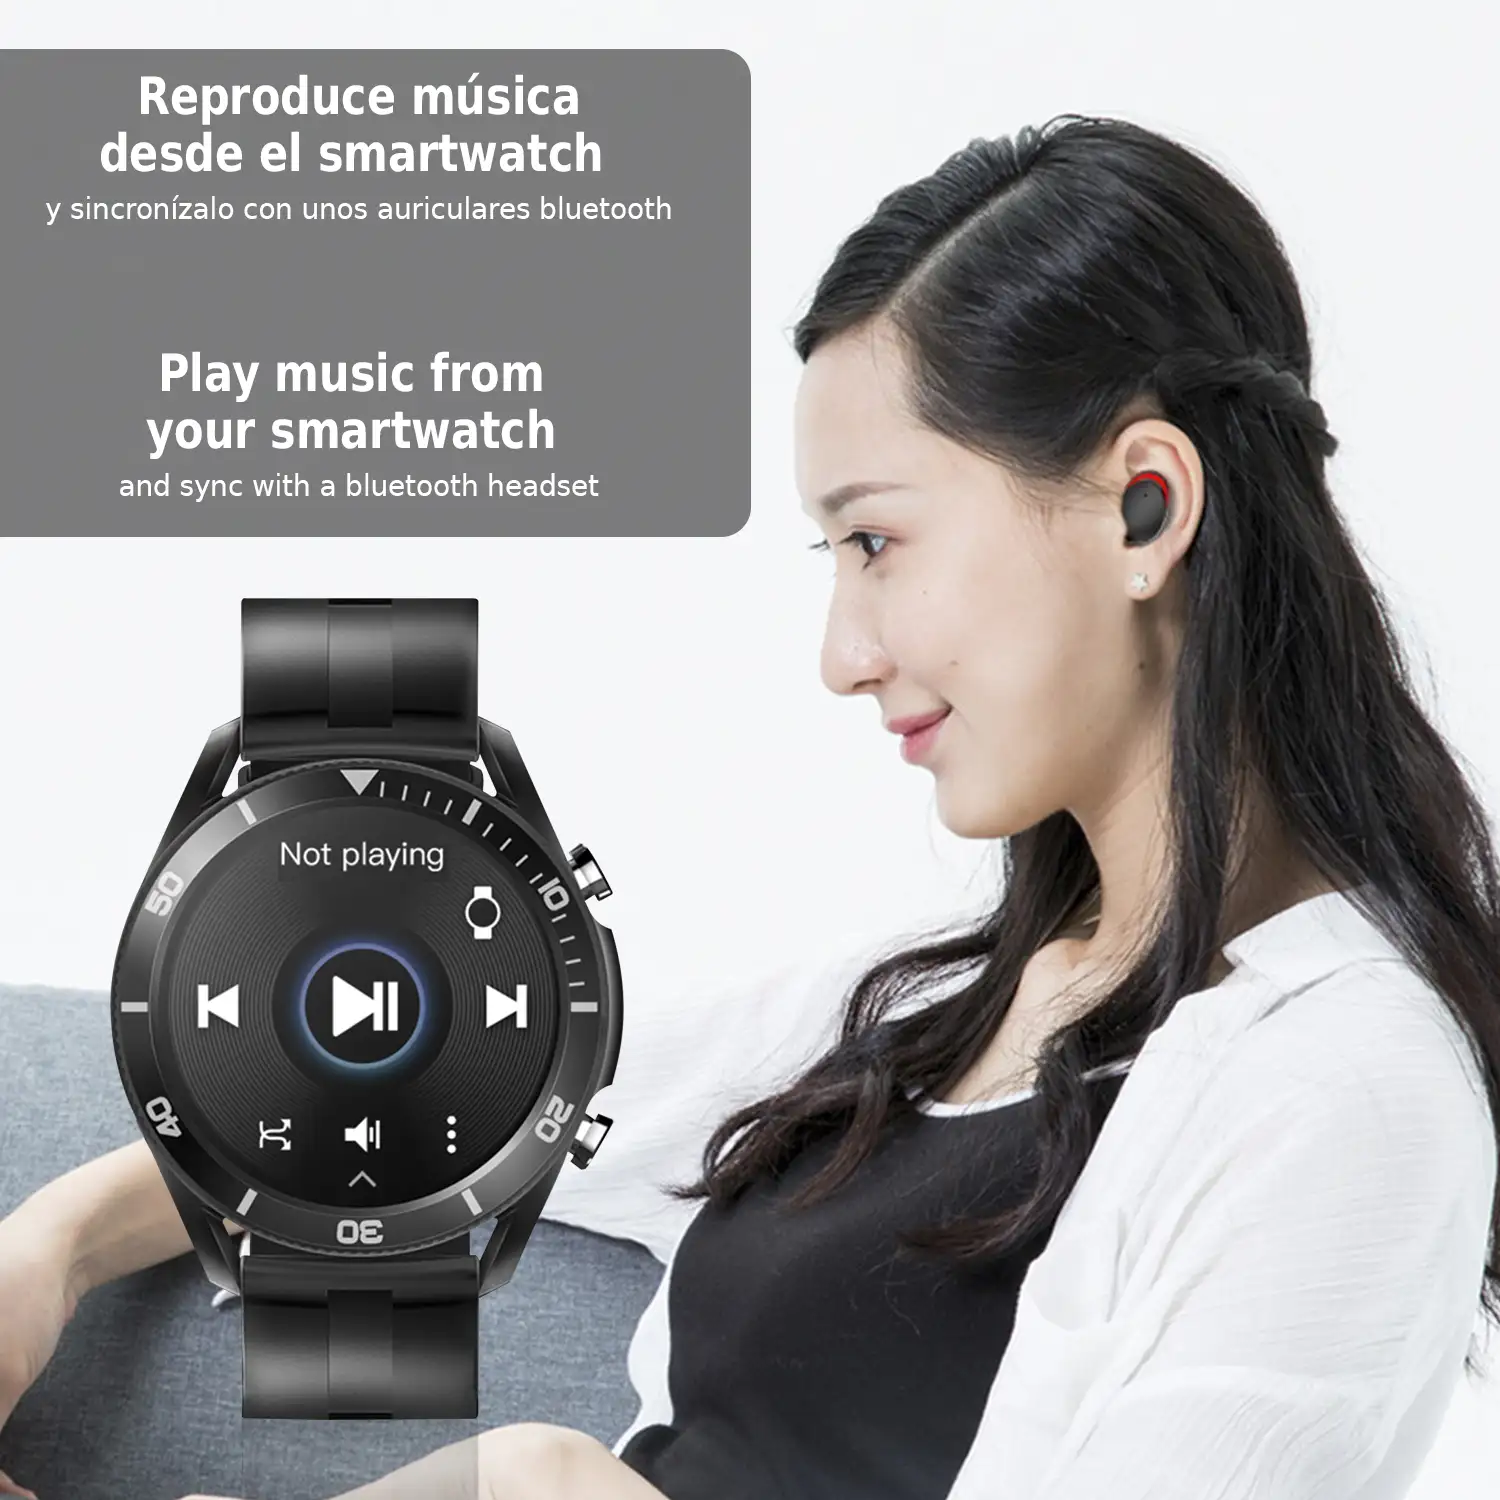 Smartwatch M25 especial música. Llamadas bluetooth, monitor cardíaco y de O2 en sangre. 6 modos deportivos.